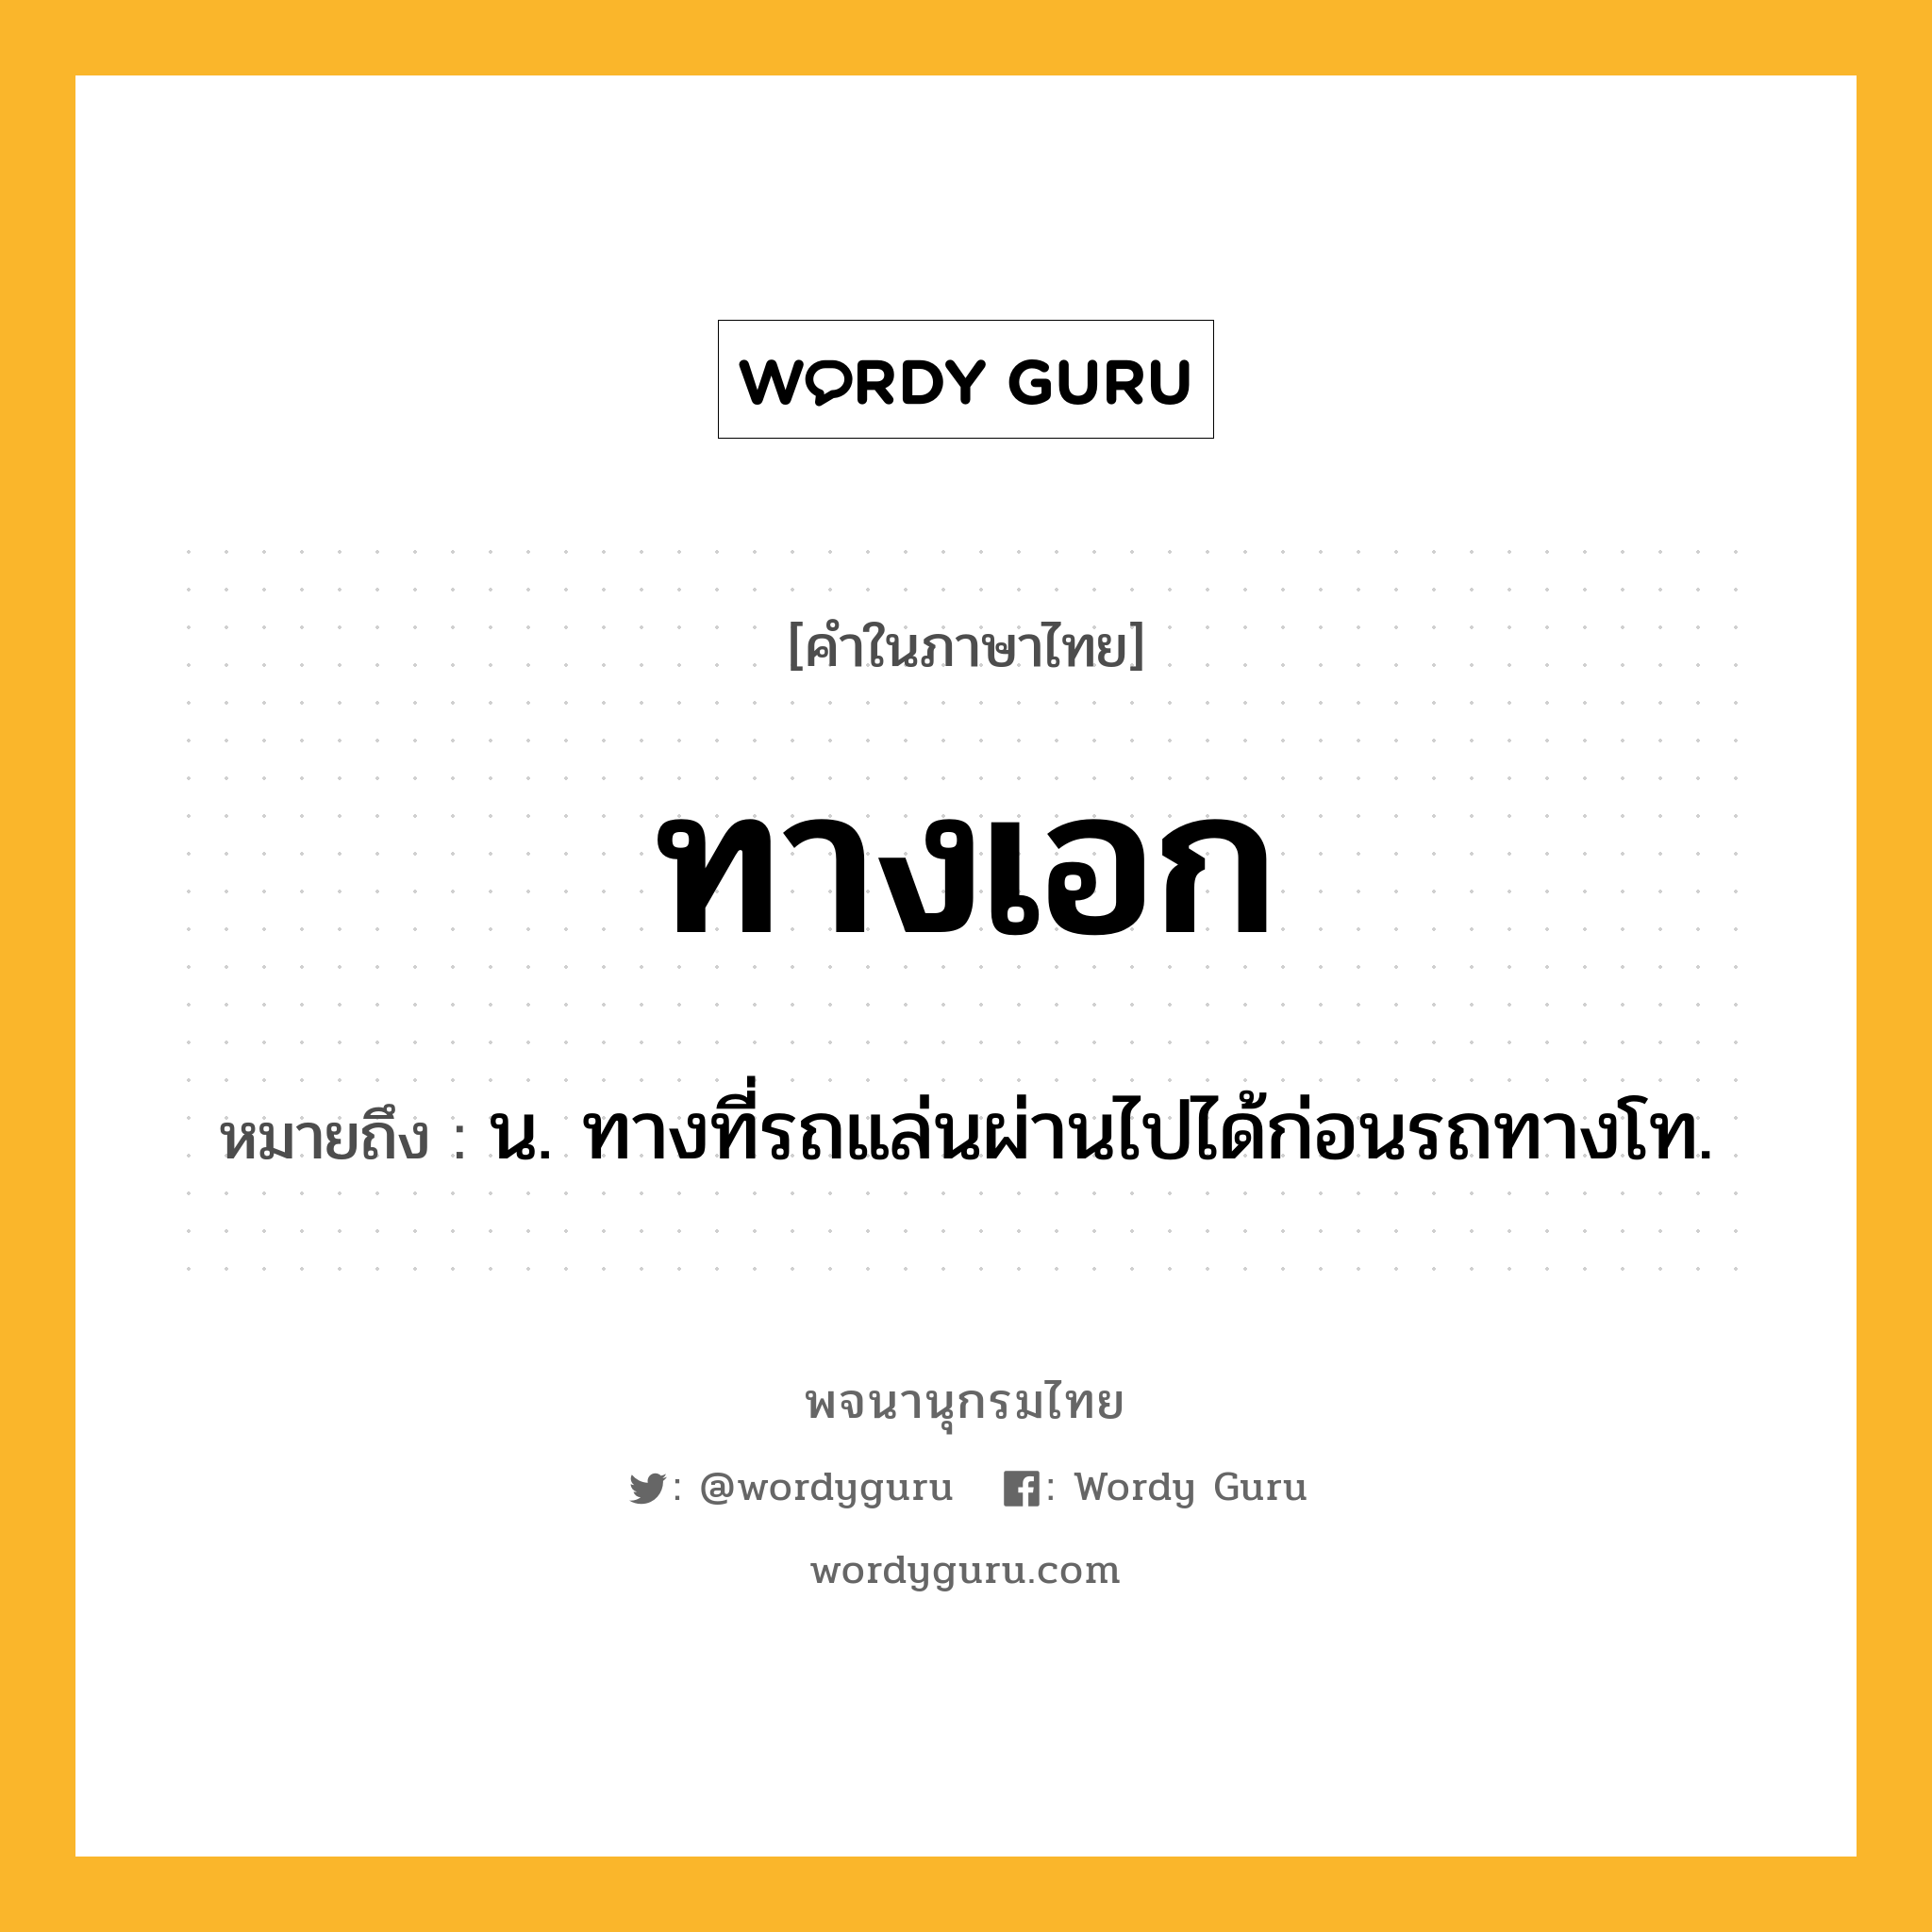 ทางเอก หมายถึงอะไร?, คำในภาษาไทย ทางเอก หมายถึง น. ทางที่รถแล่นผ่านไปได้ก่อนรถทางโท.